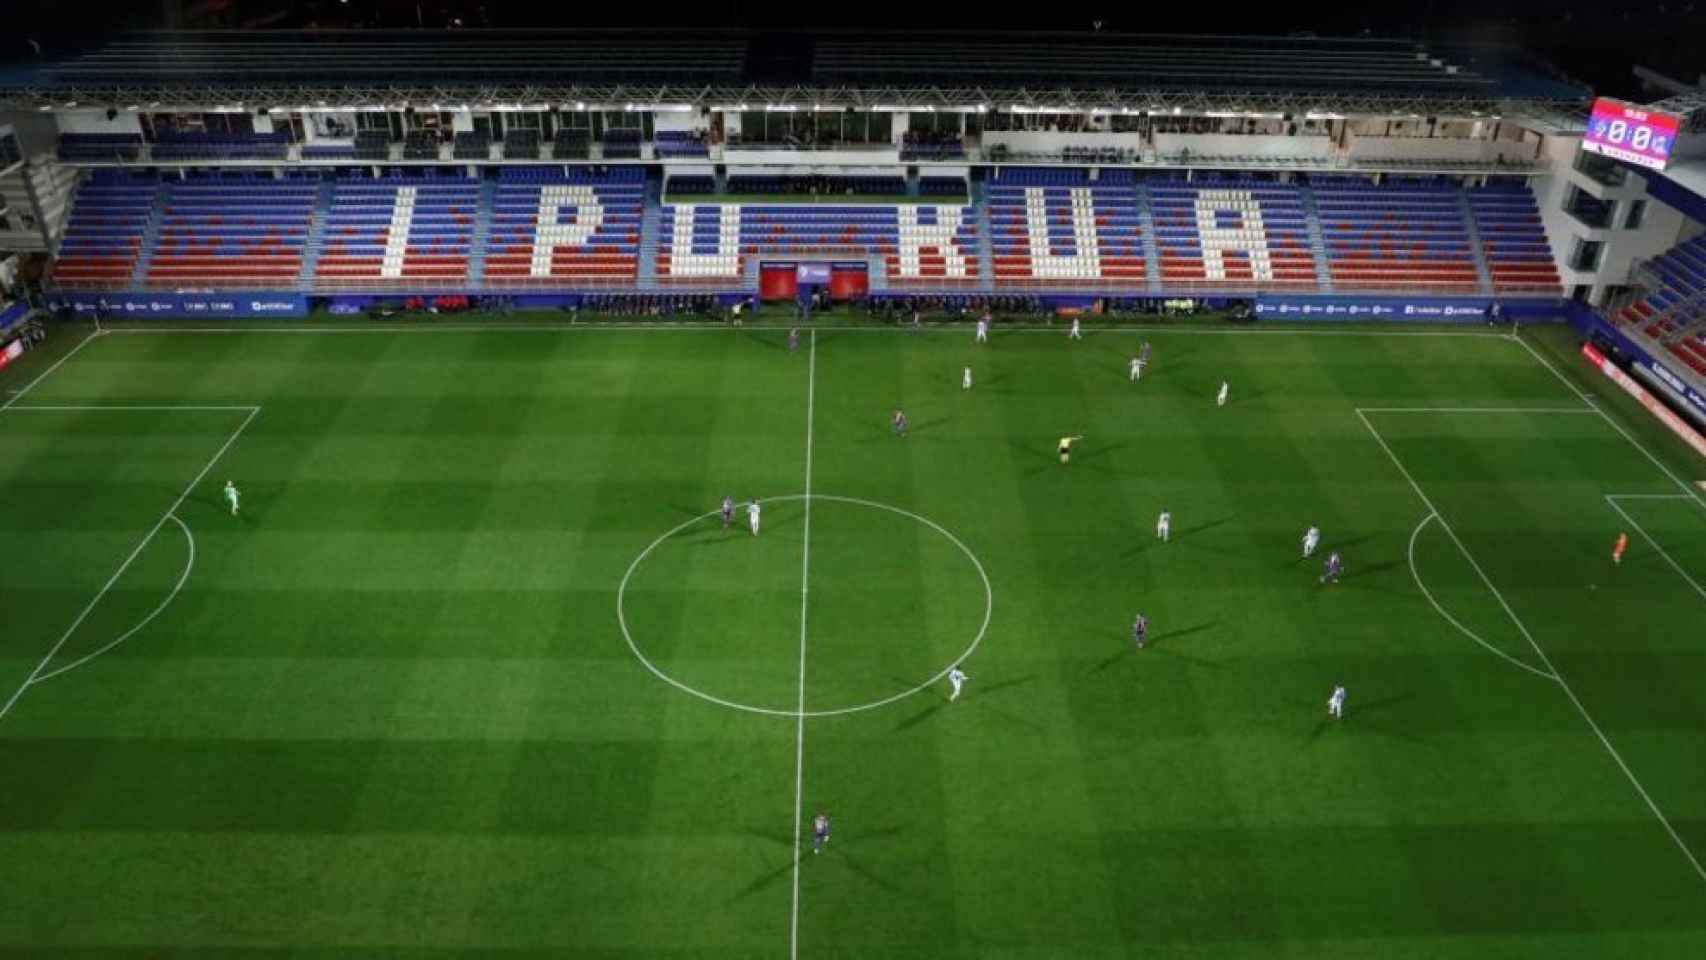 Imagen aérea del Eibar - Real Sociedad que se disputó sin público en las gradas